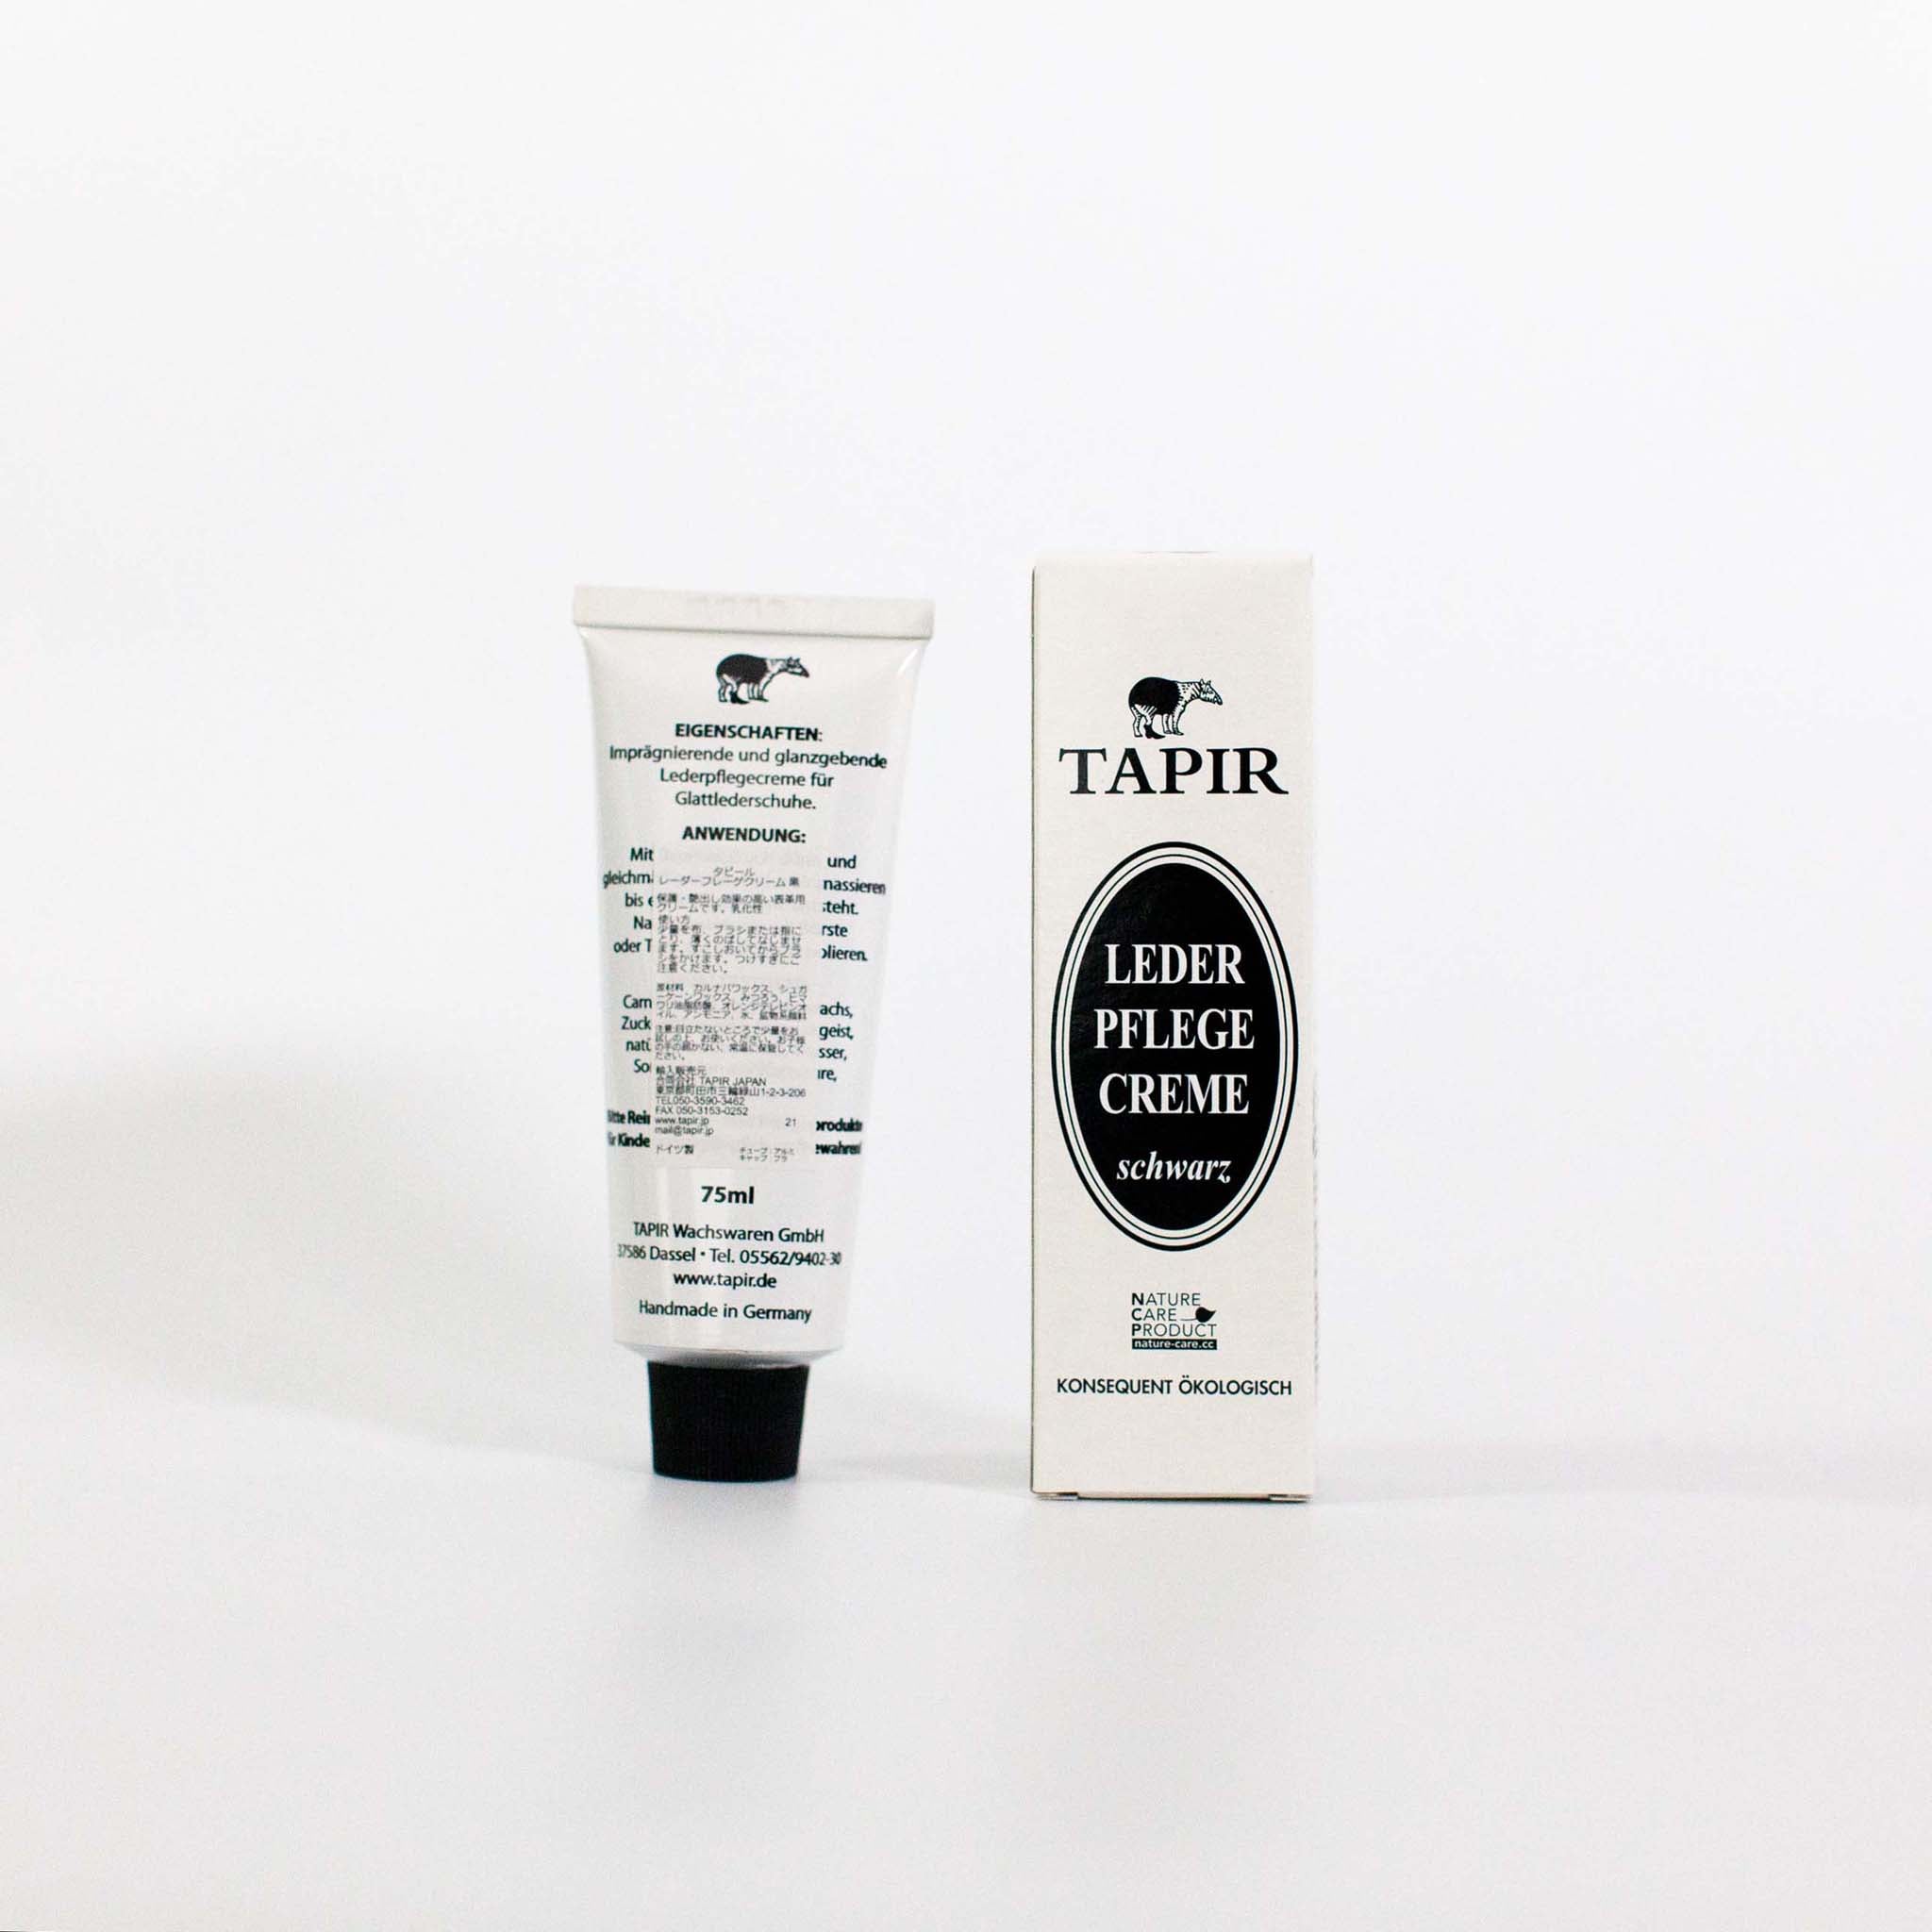 Tapir Rader Frege Cream